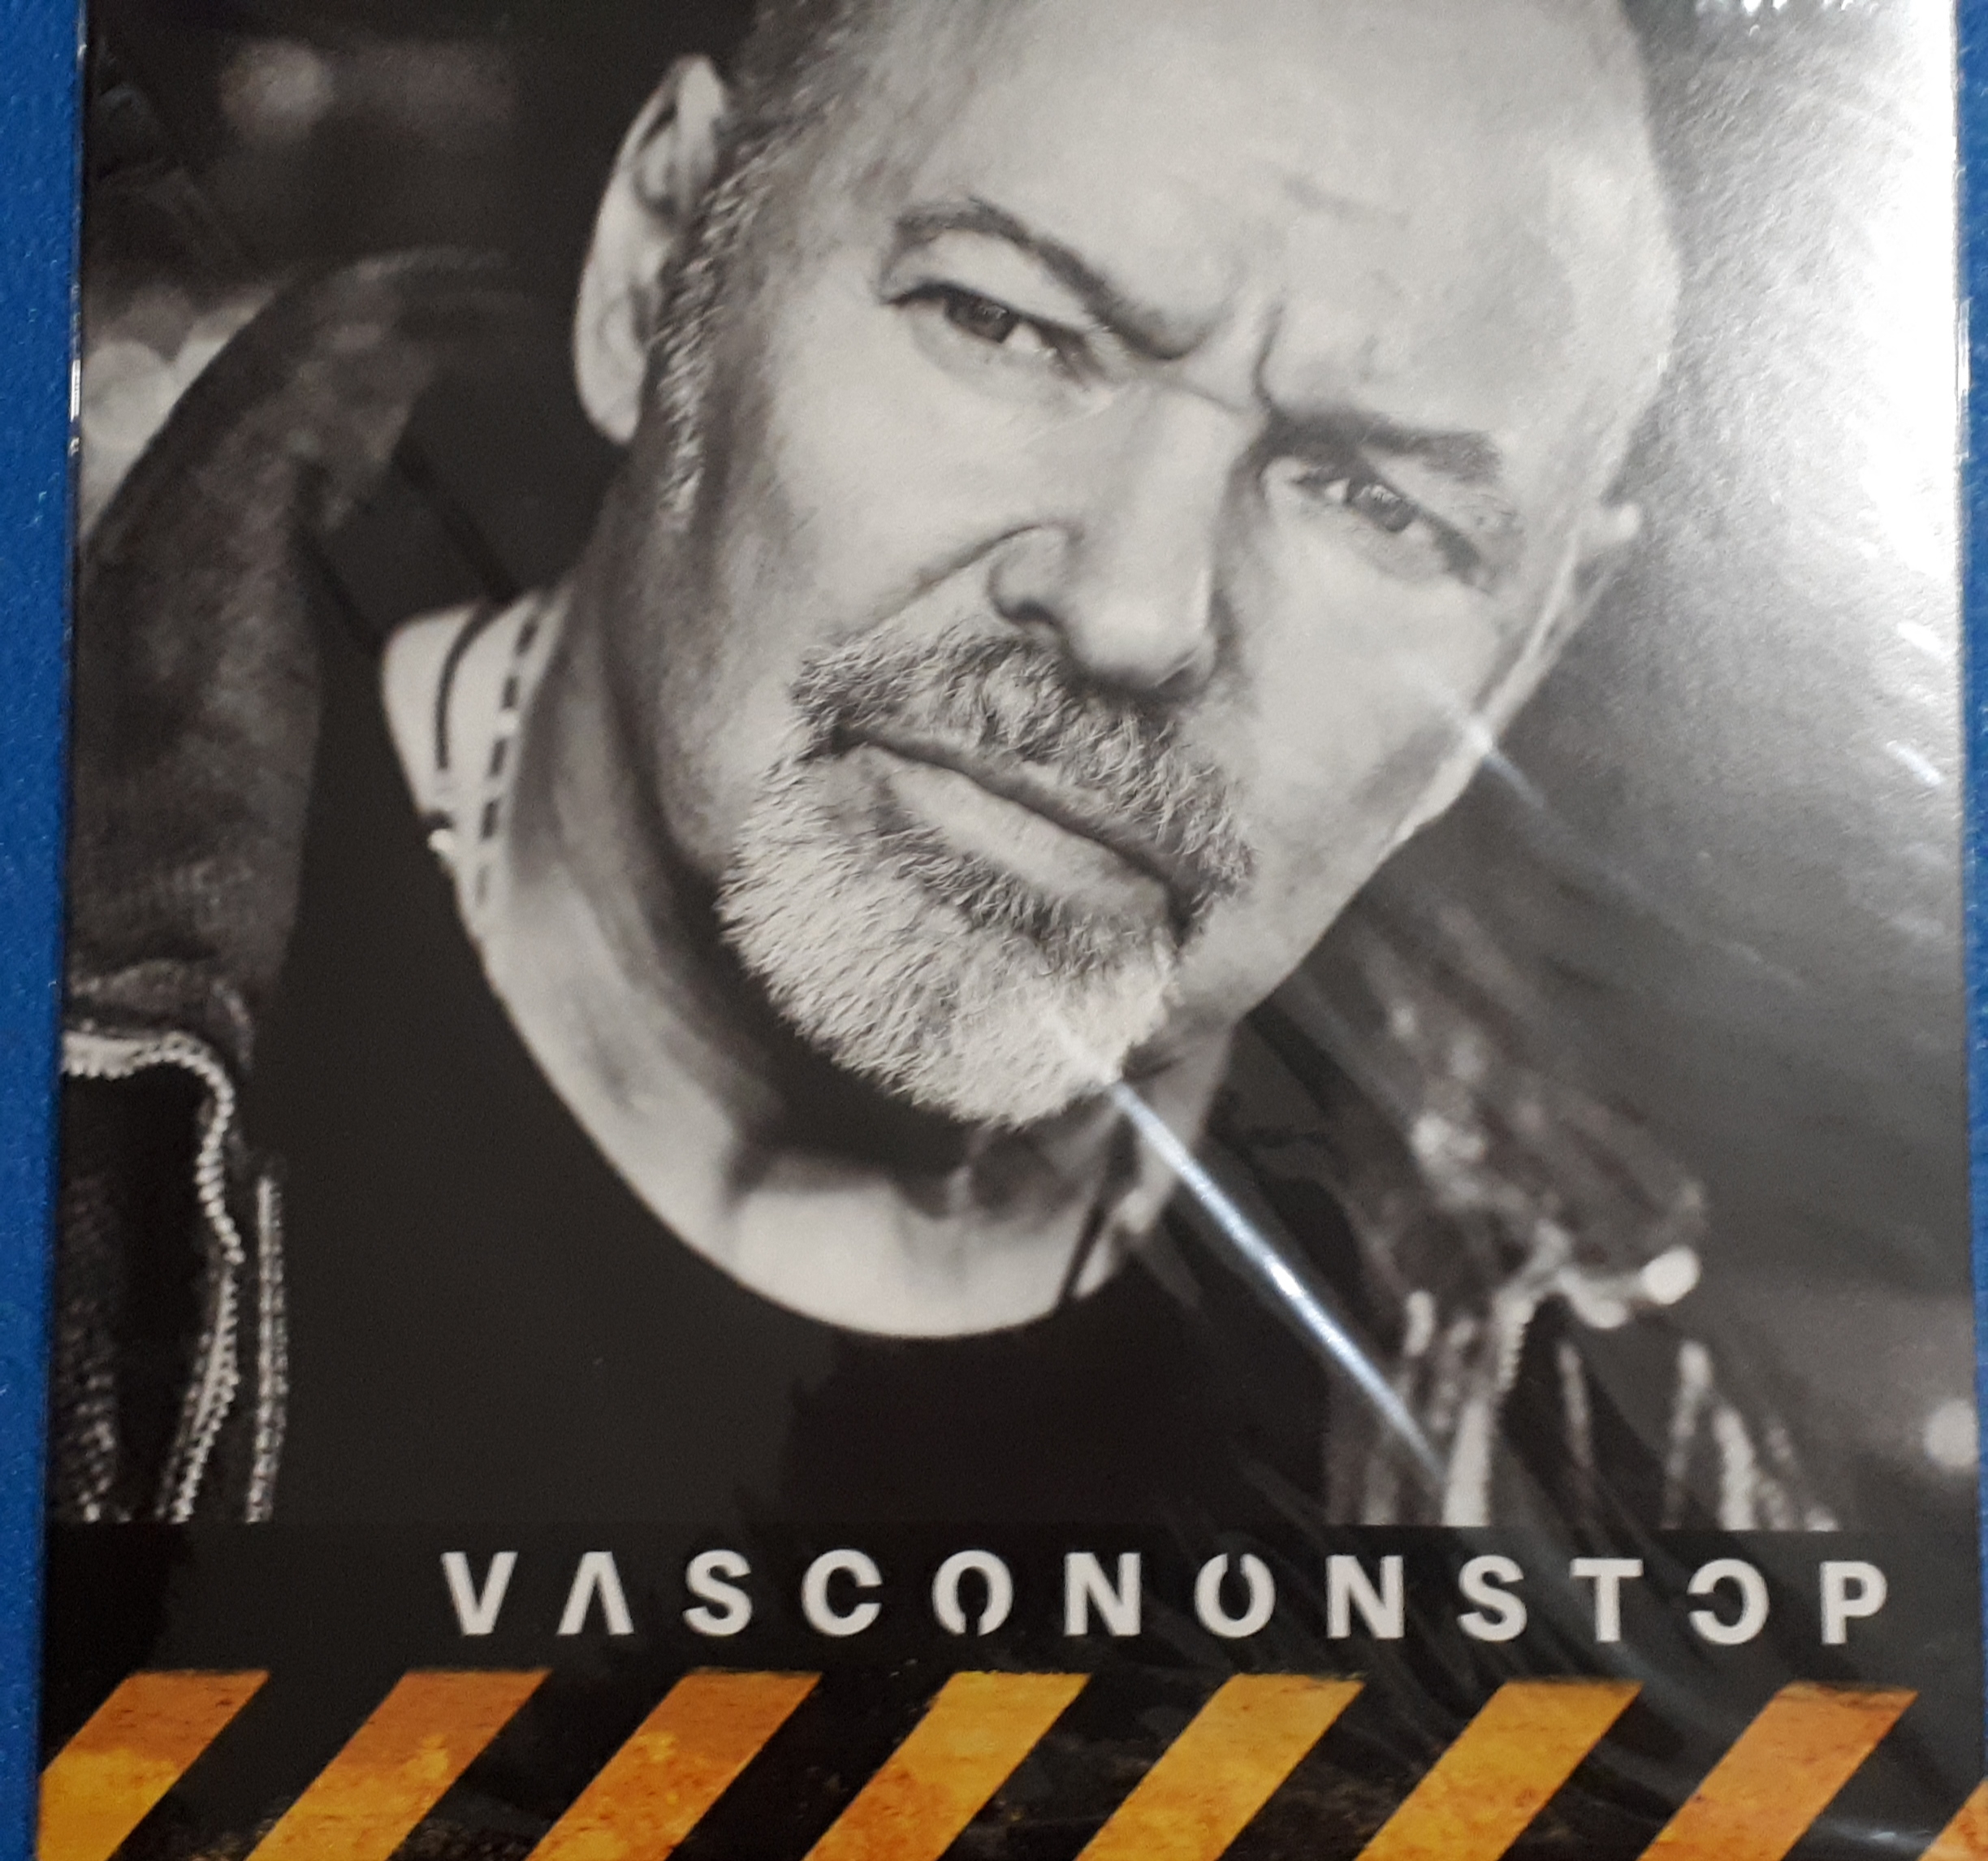 Vasco Rossi - Vascononstop - RDS 2017